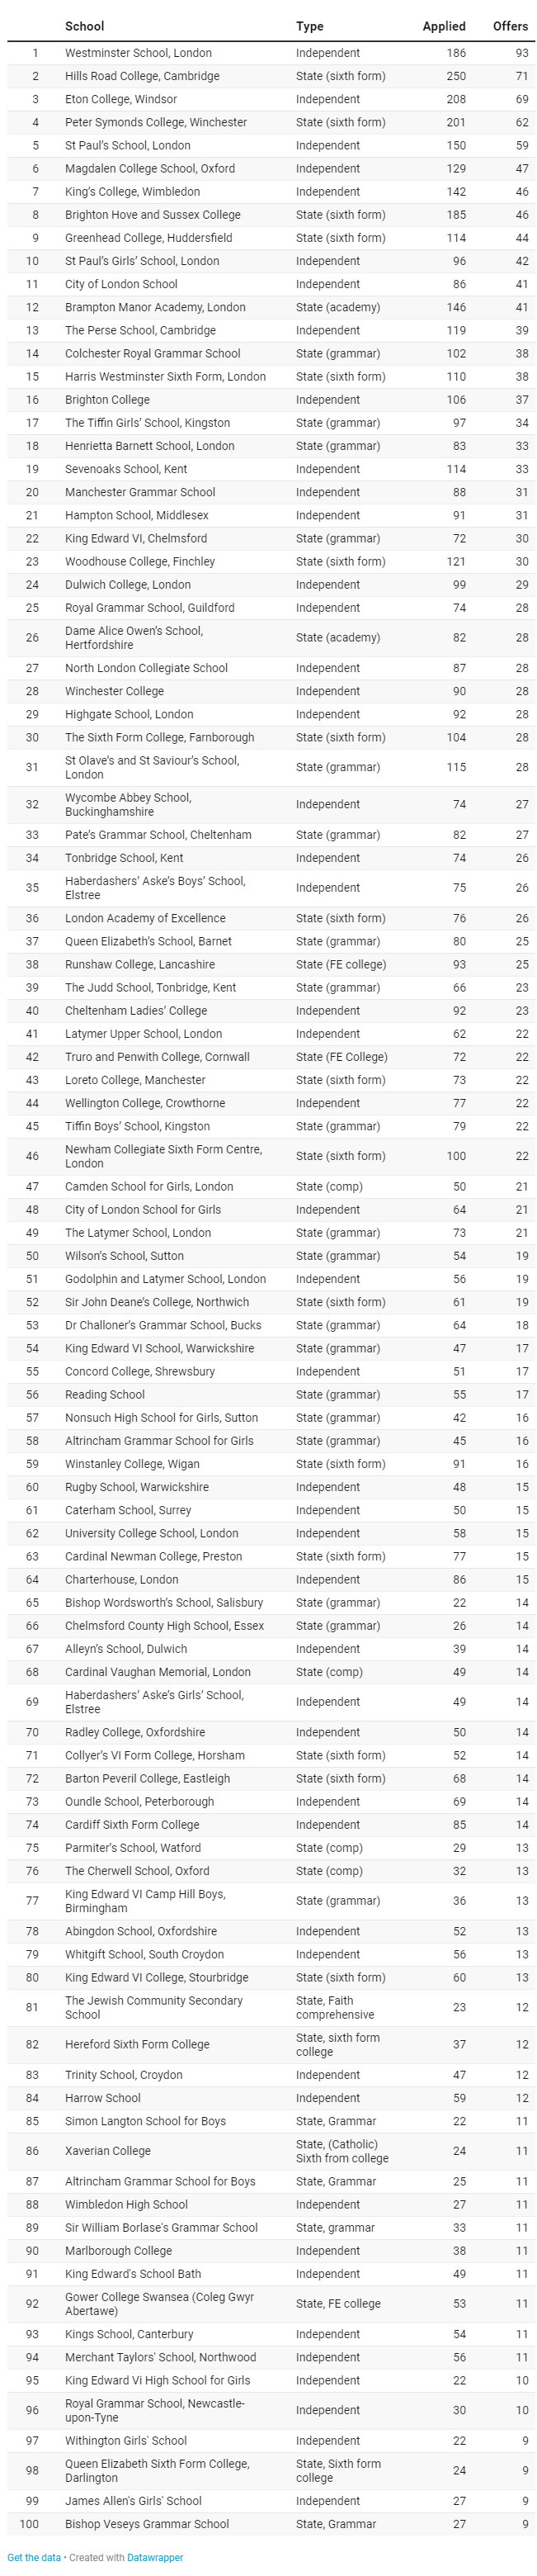 2020牛剑录取人数最多的英国高中TOP10